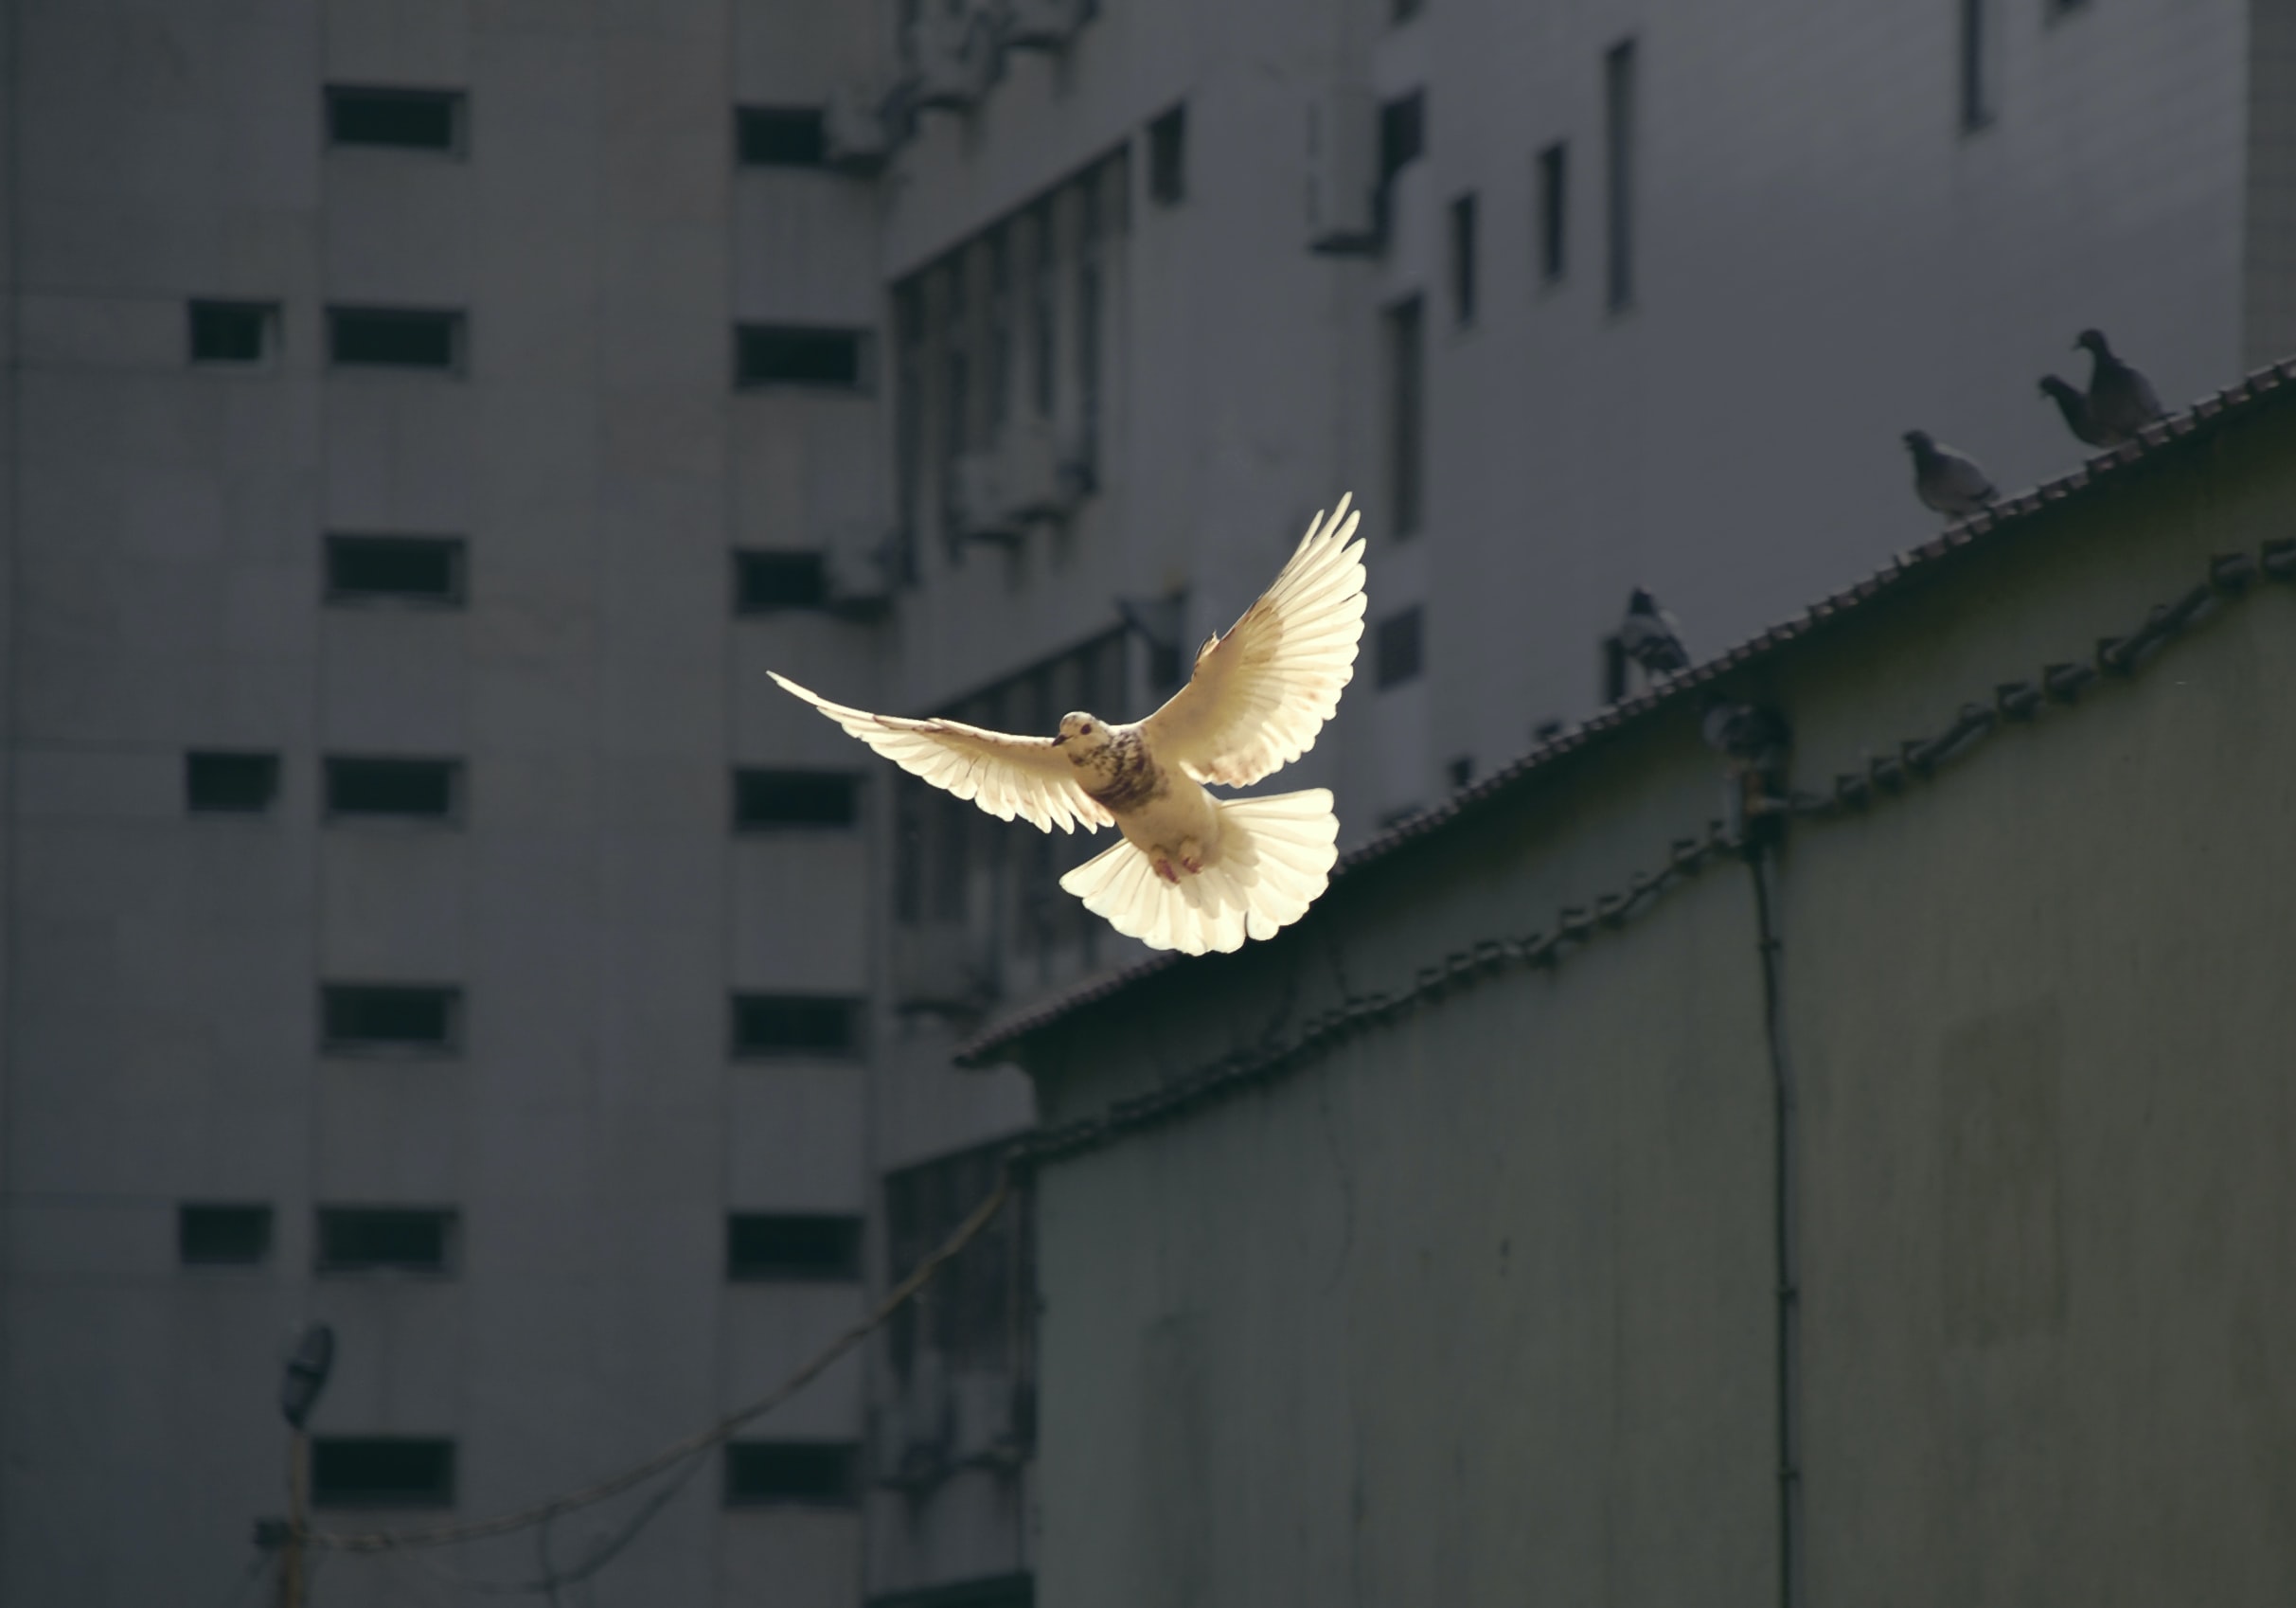 Fliegende Taube. Der weiße Vogel fliegt von einem grauen Betongebäude herab auf die Kamera zu. Quelle: Sunguk Kim auf unsplash. 